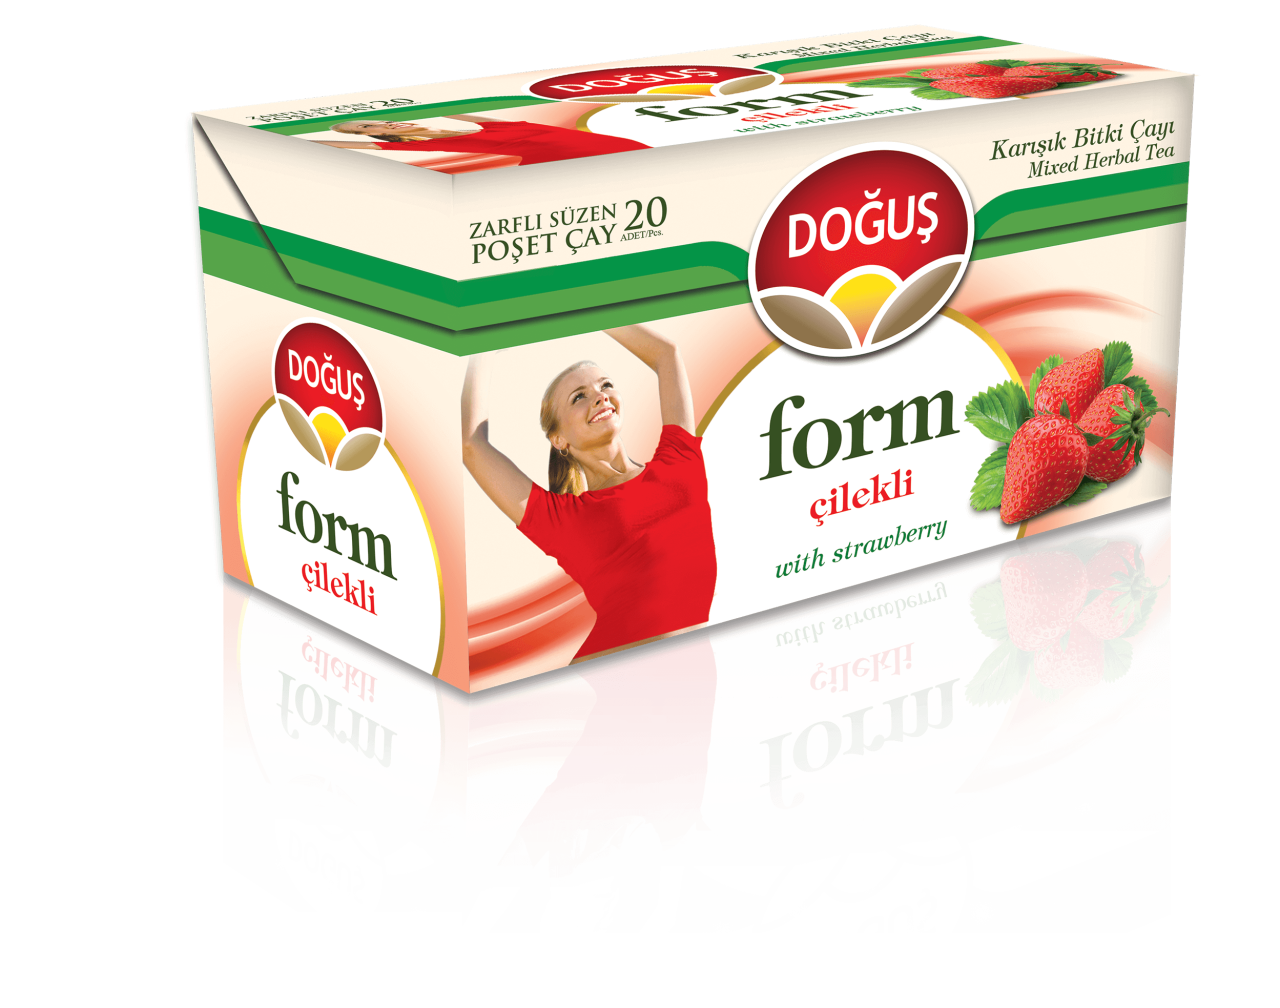 DOGUS FORM CILEKLI 20'ER (thé minceur fraise)